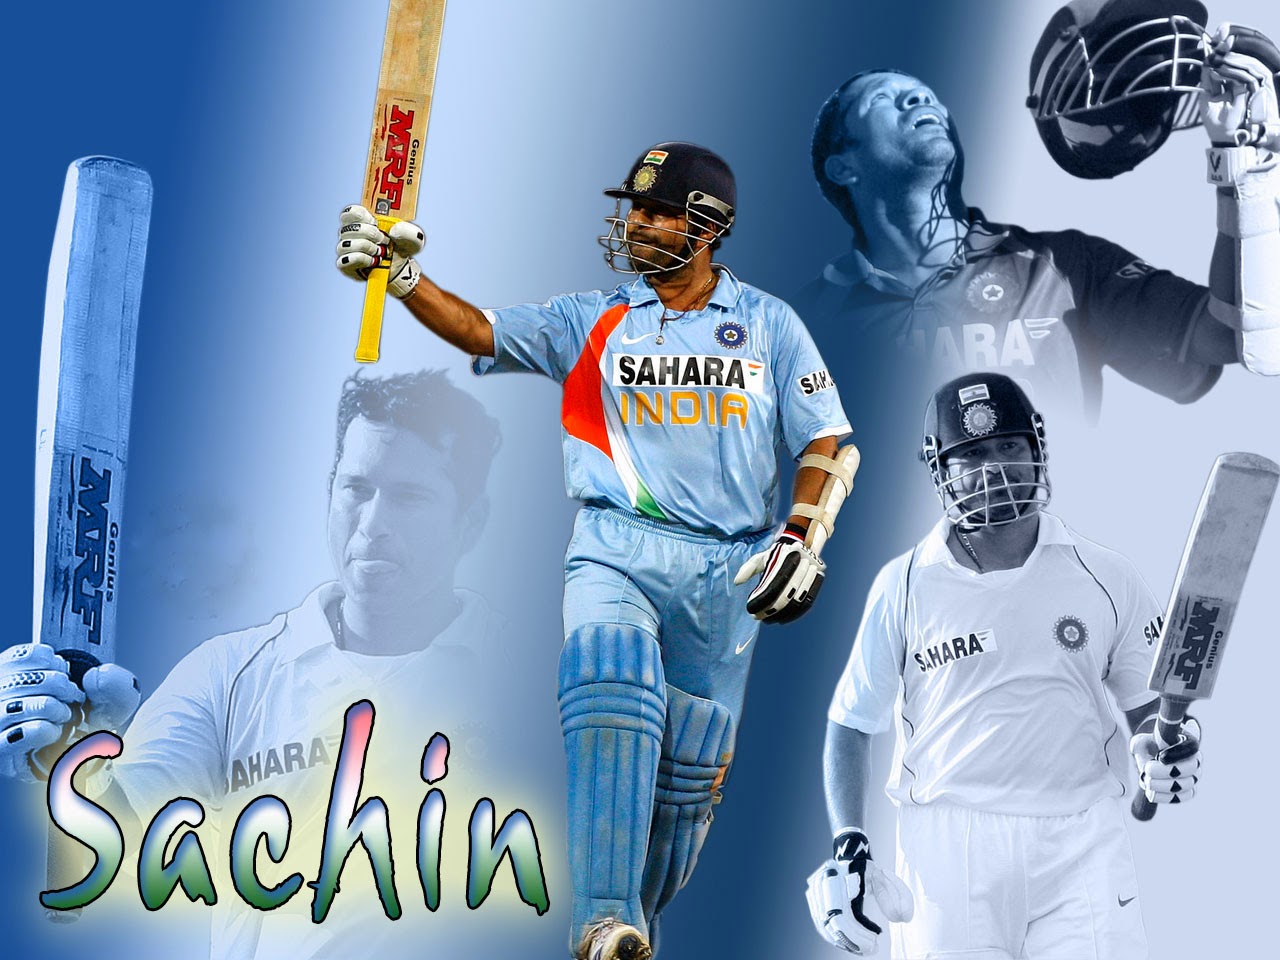 Sachin - Hd Wallpaper Sachin Tendulkar , HD Wallpaper & Backgrounds